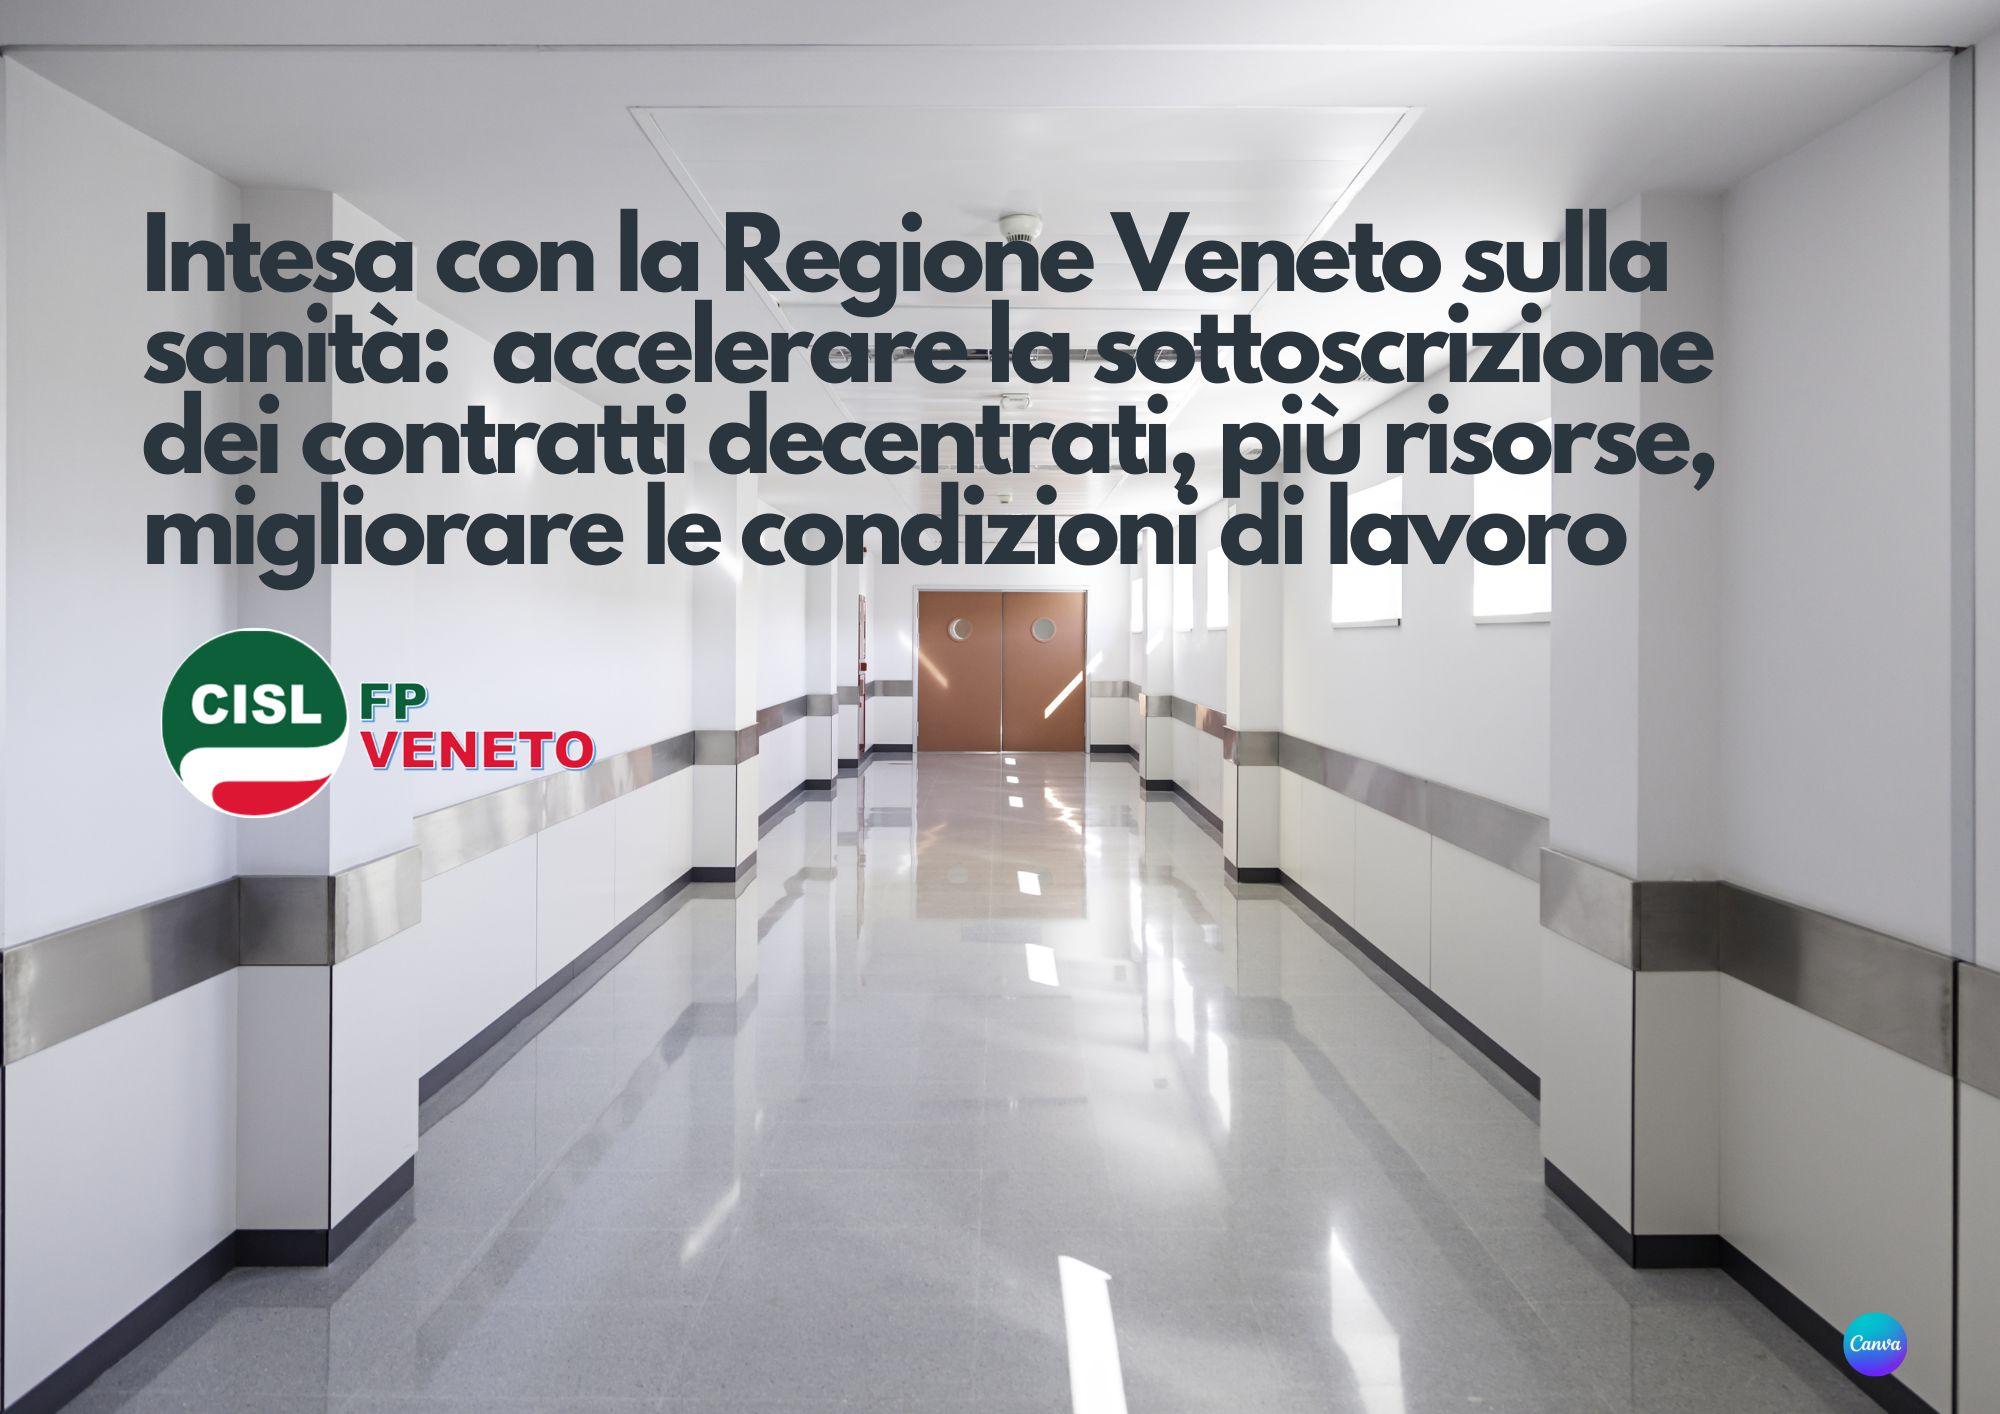 Cisl FP Veneto. Sanità pubblica. Accordo con Regione Veneto: accelerare contrattazione decentrata e risorse